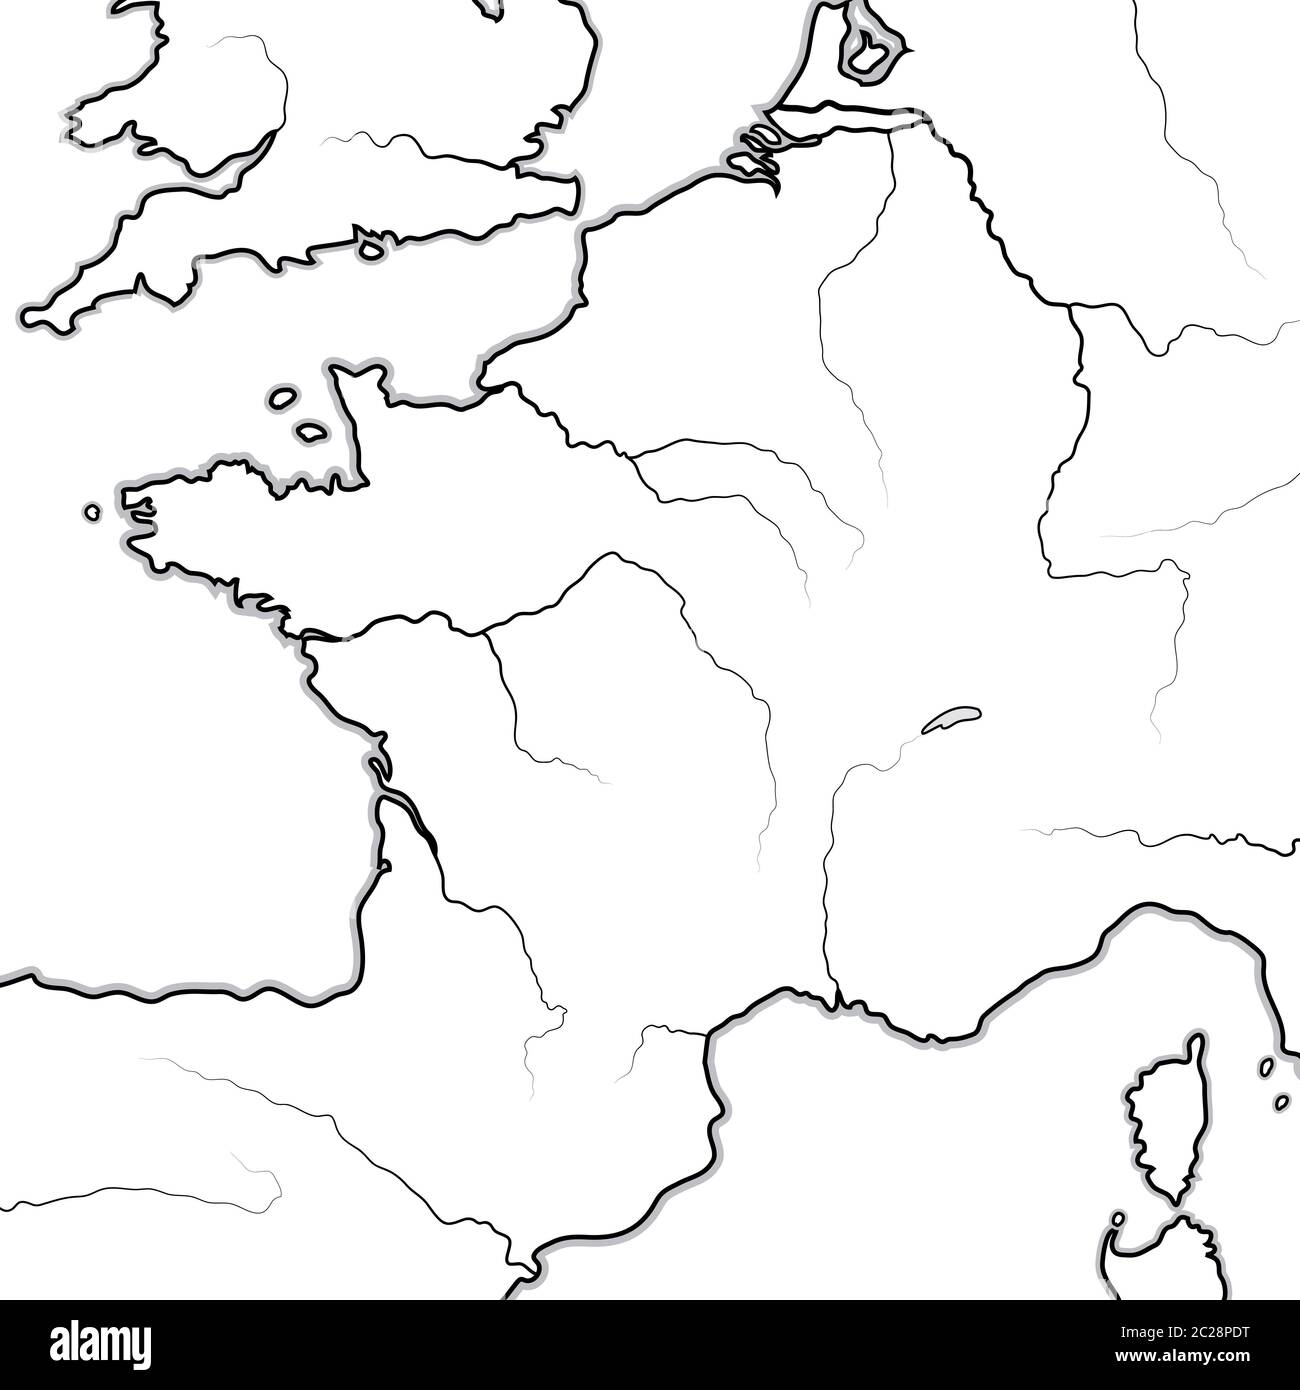 Mappa delle terre FRANCESI: Francia, Provenza, Normandia, Occitanie, Aquitania. Grafico geografico. Foto Stock